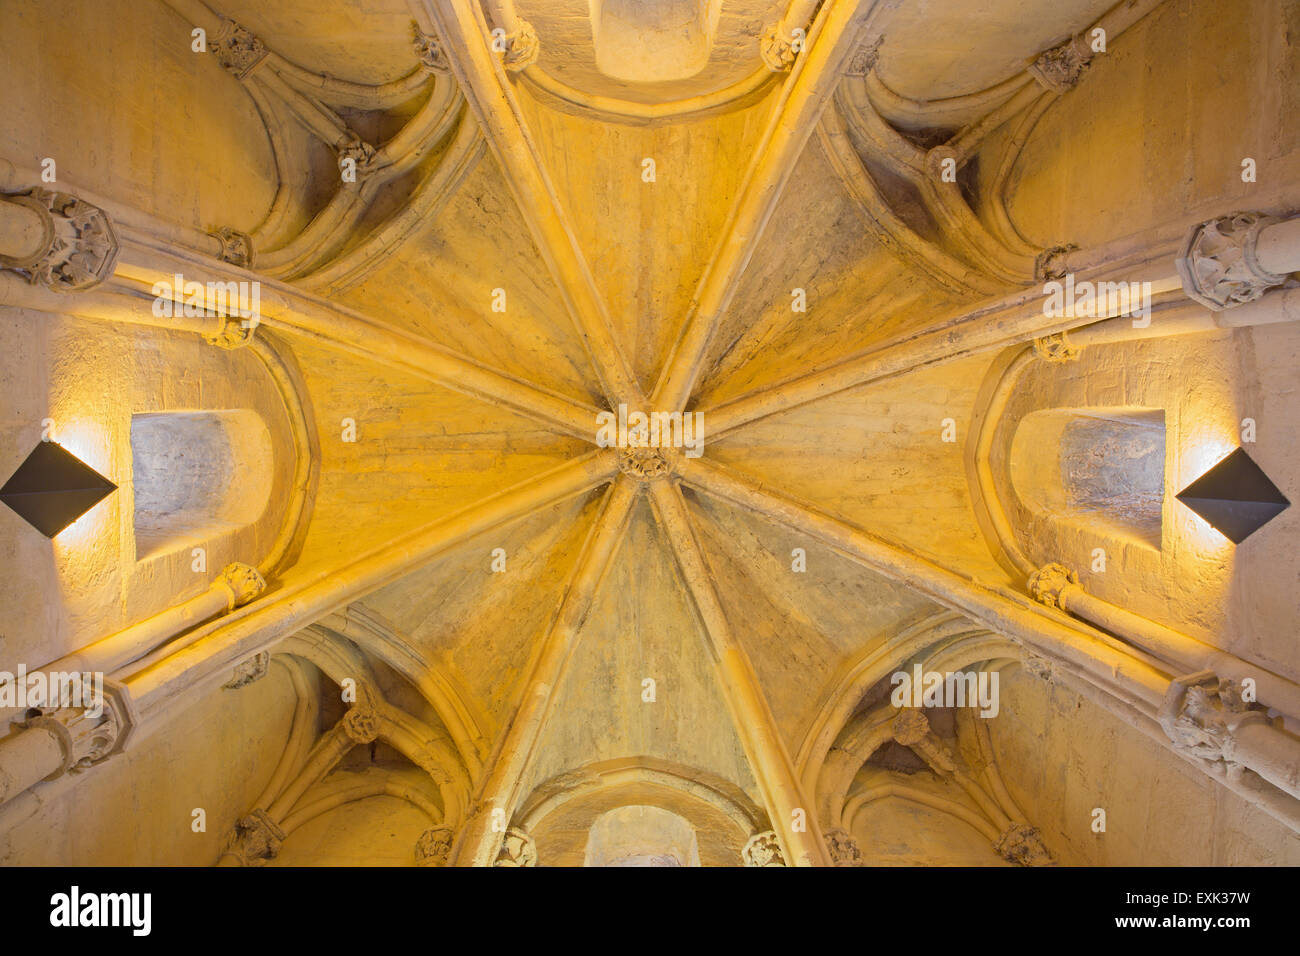 CORDOBA, Spagna - 25 Maggio 2015: la volta gotica a Alcazar de los Reyes Cristianos castello. Foto Stock